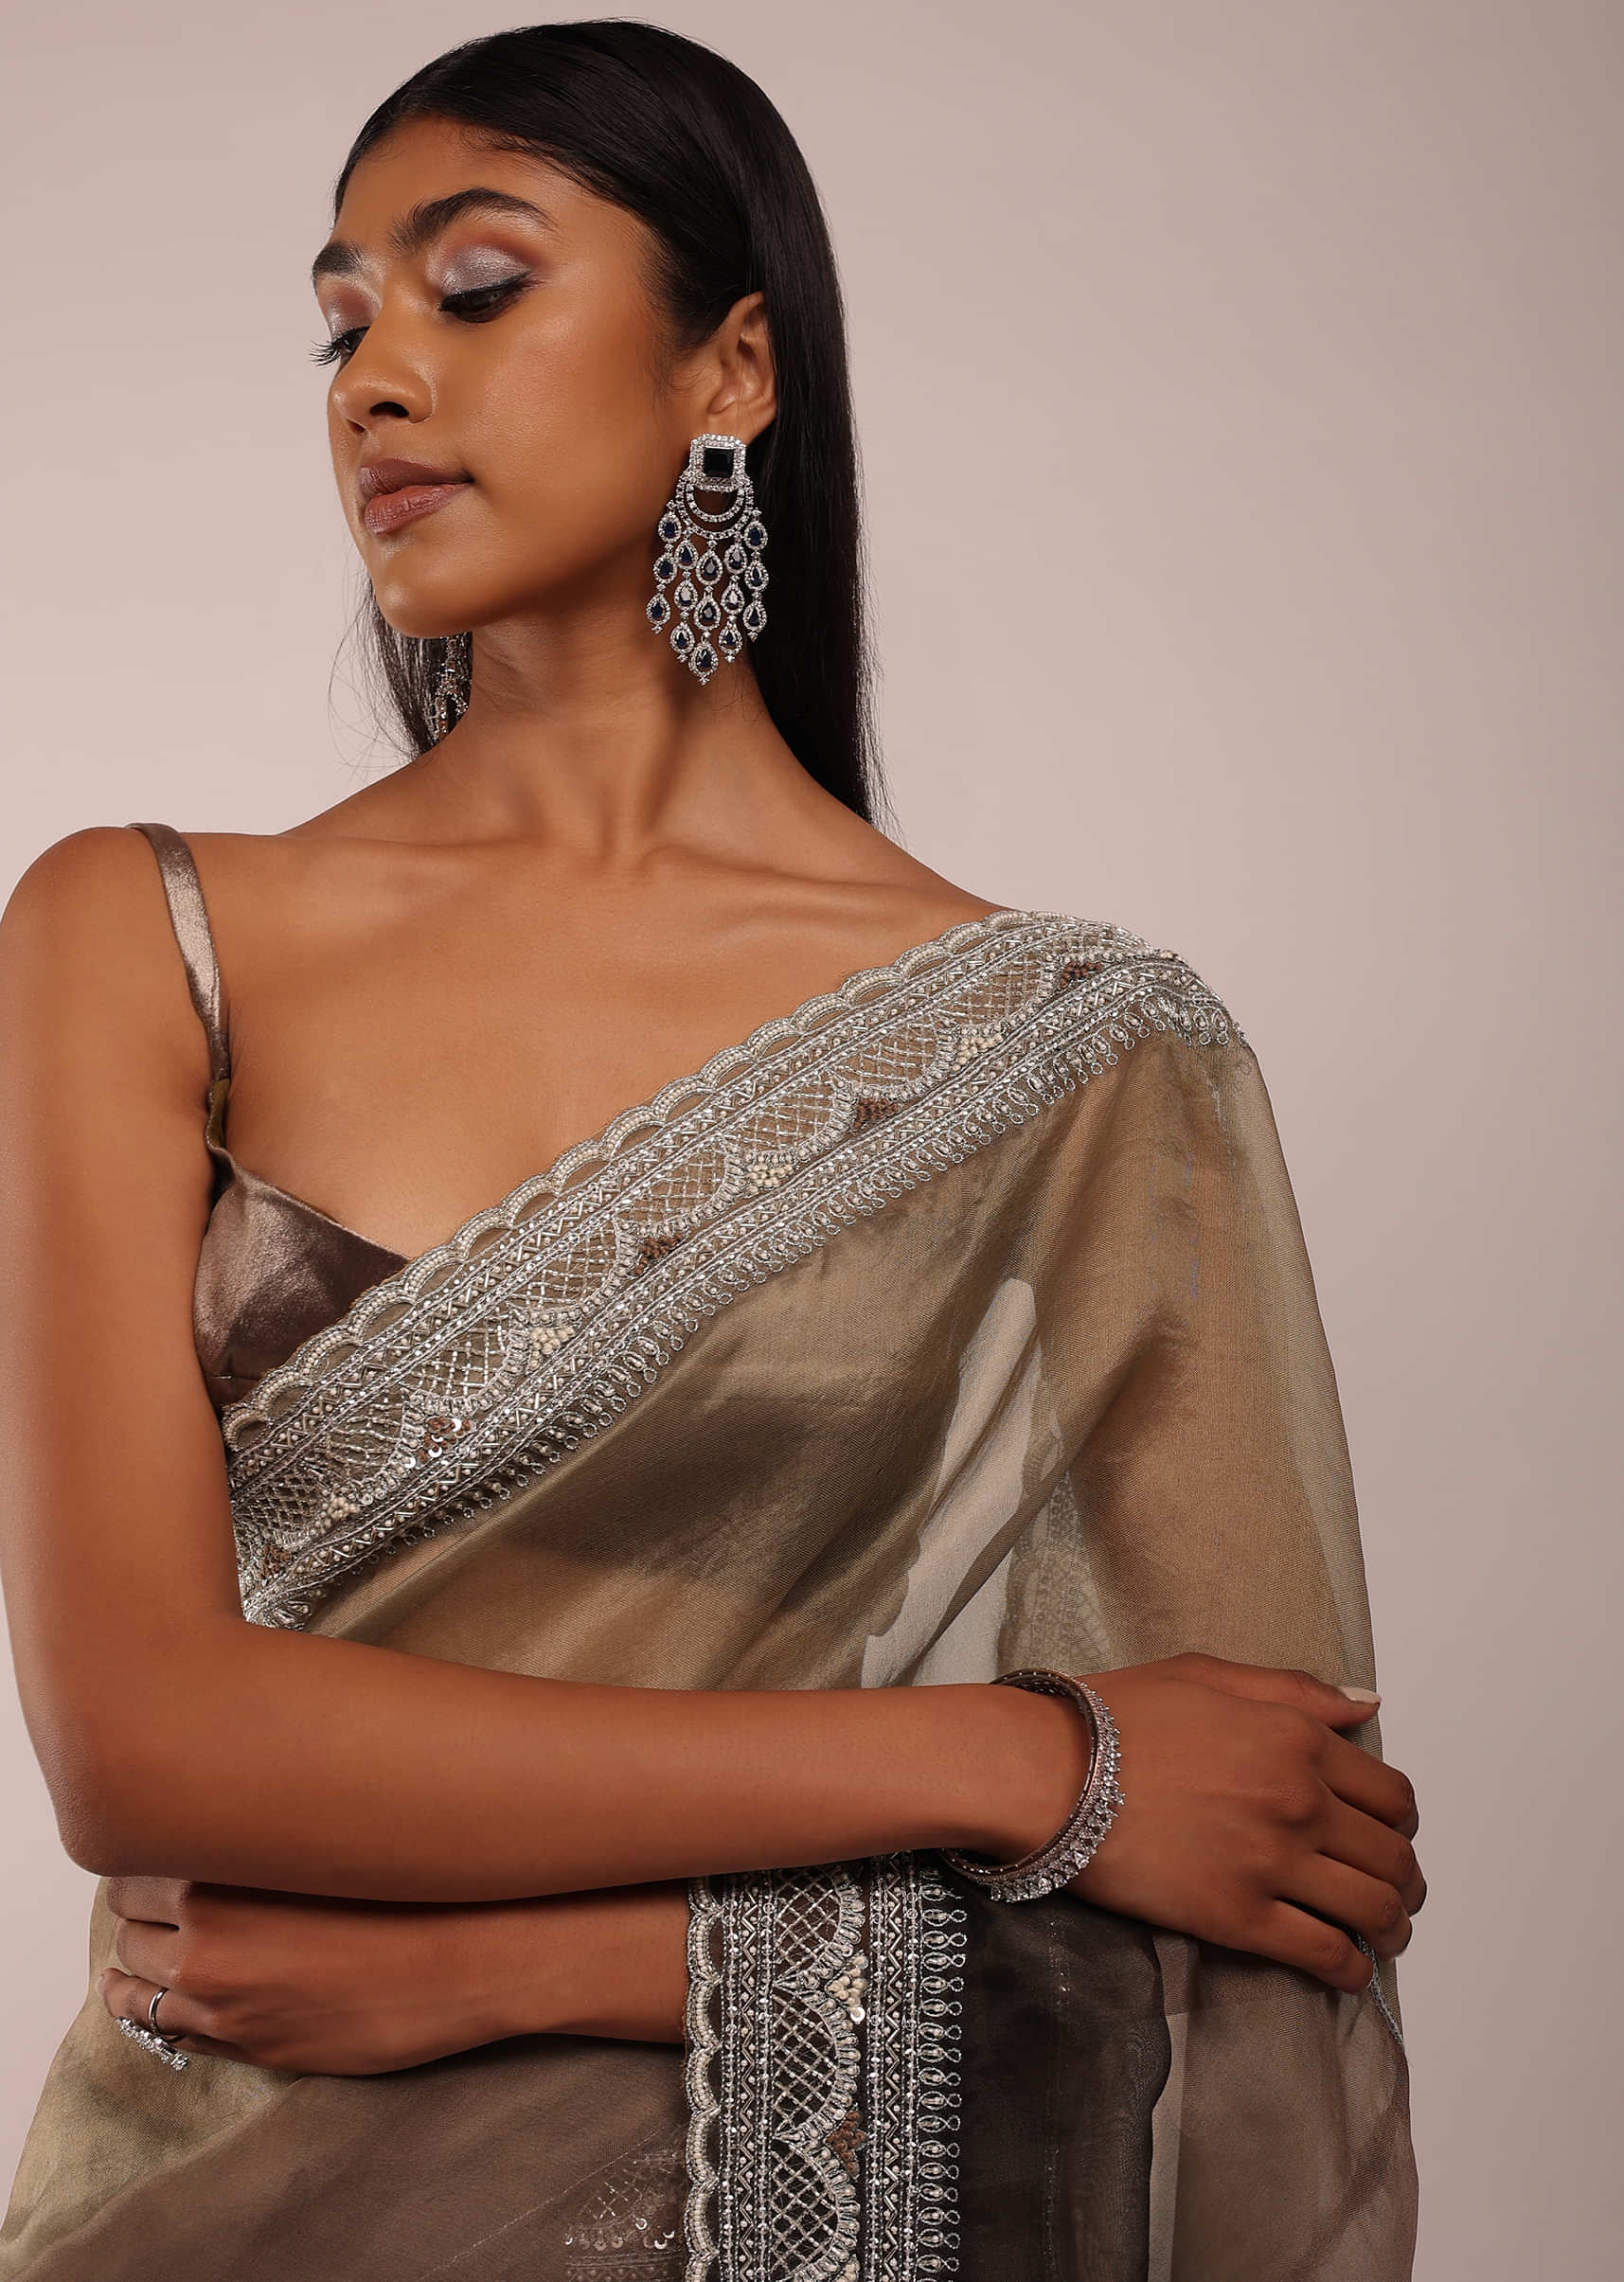 Saree blouse beads / saree blouse latkan / latkhan | Shopee Malaysia